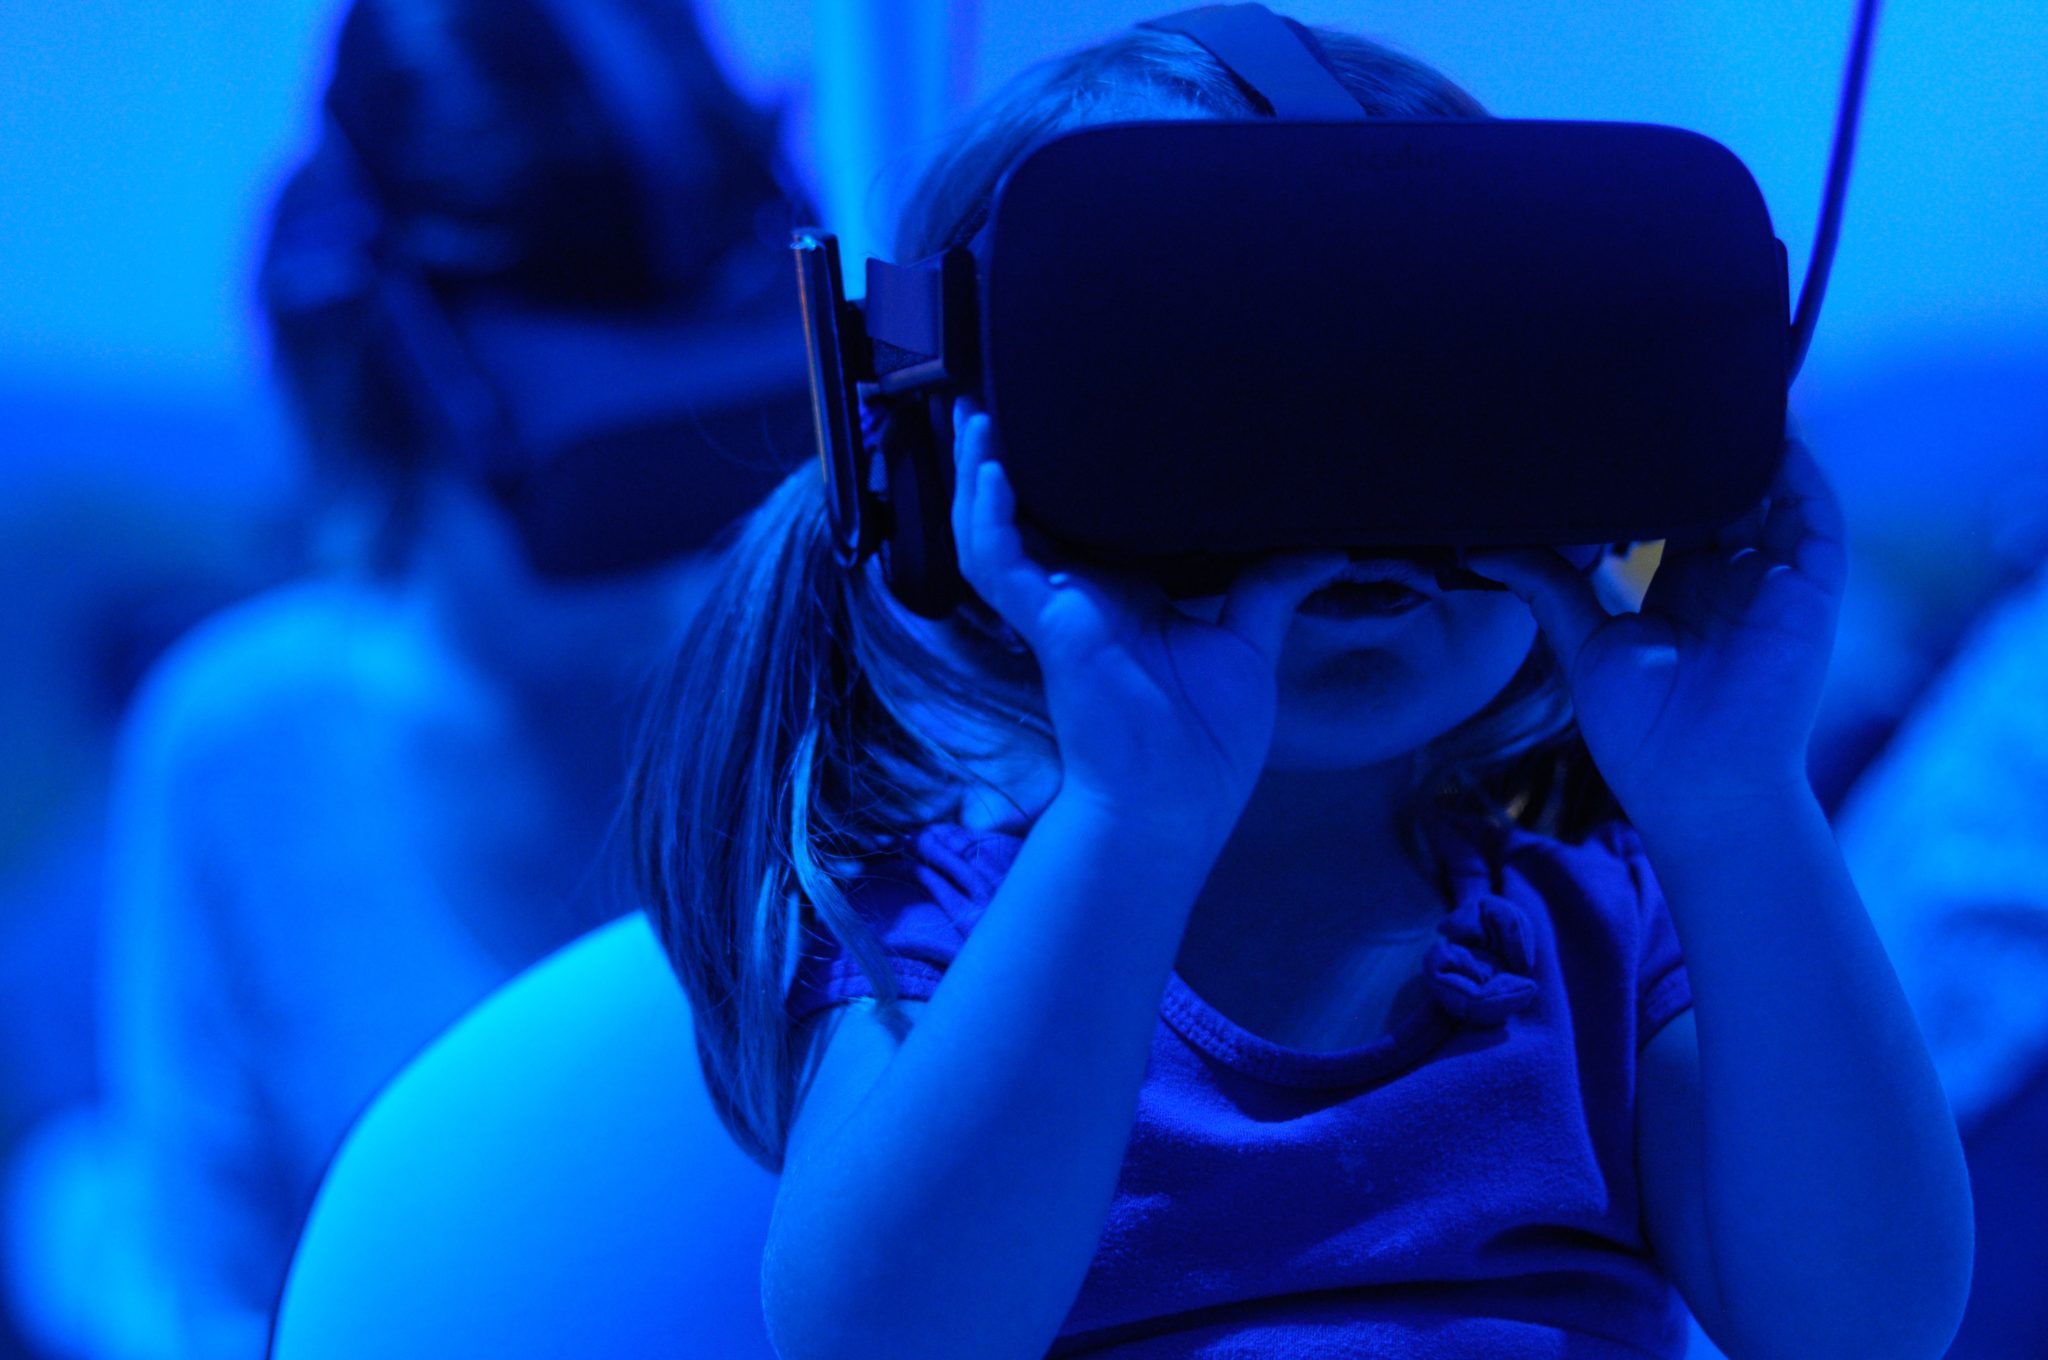 Pienellä lapsella on VR-lasit päässä ja hän näyttää keskittyneeltä.